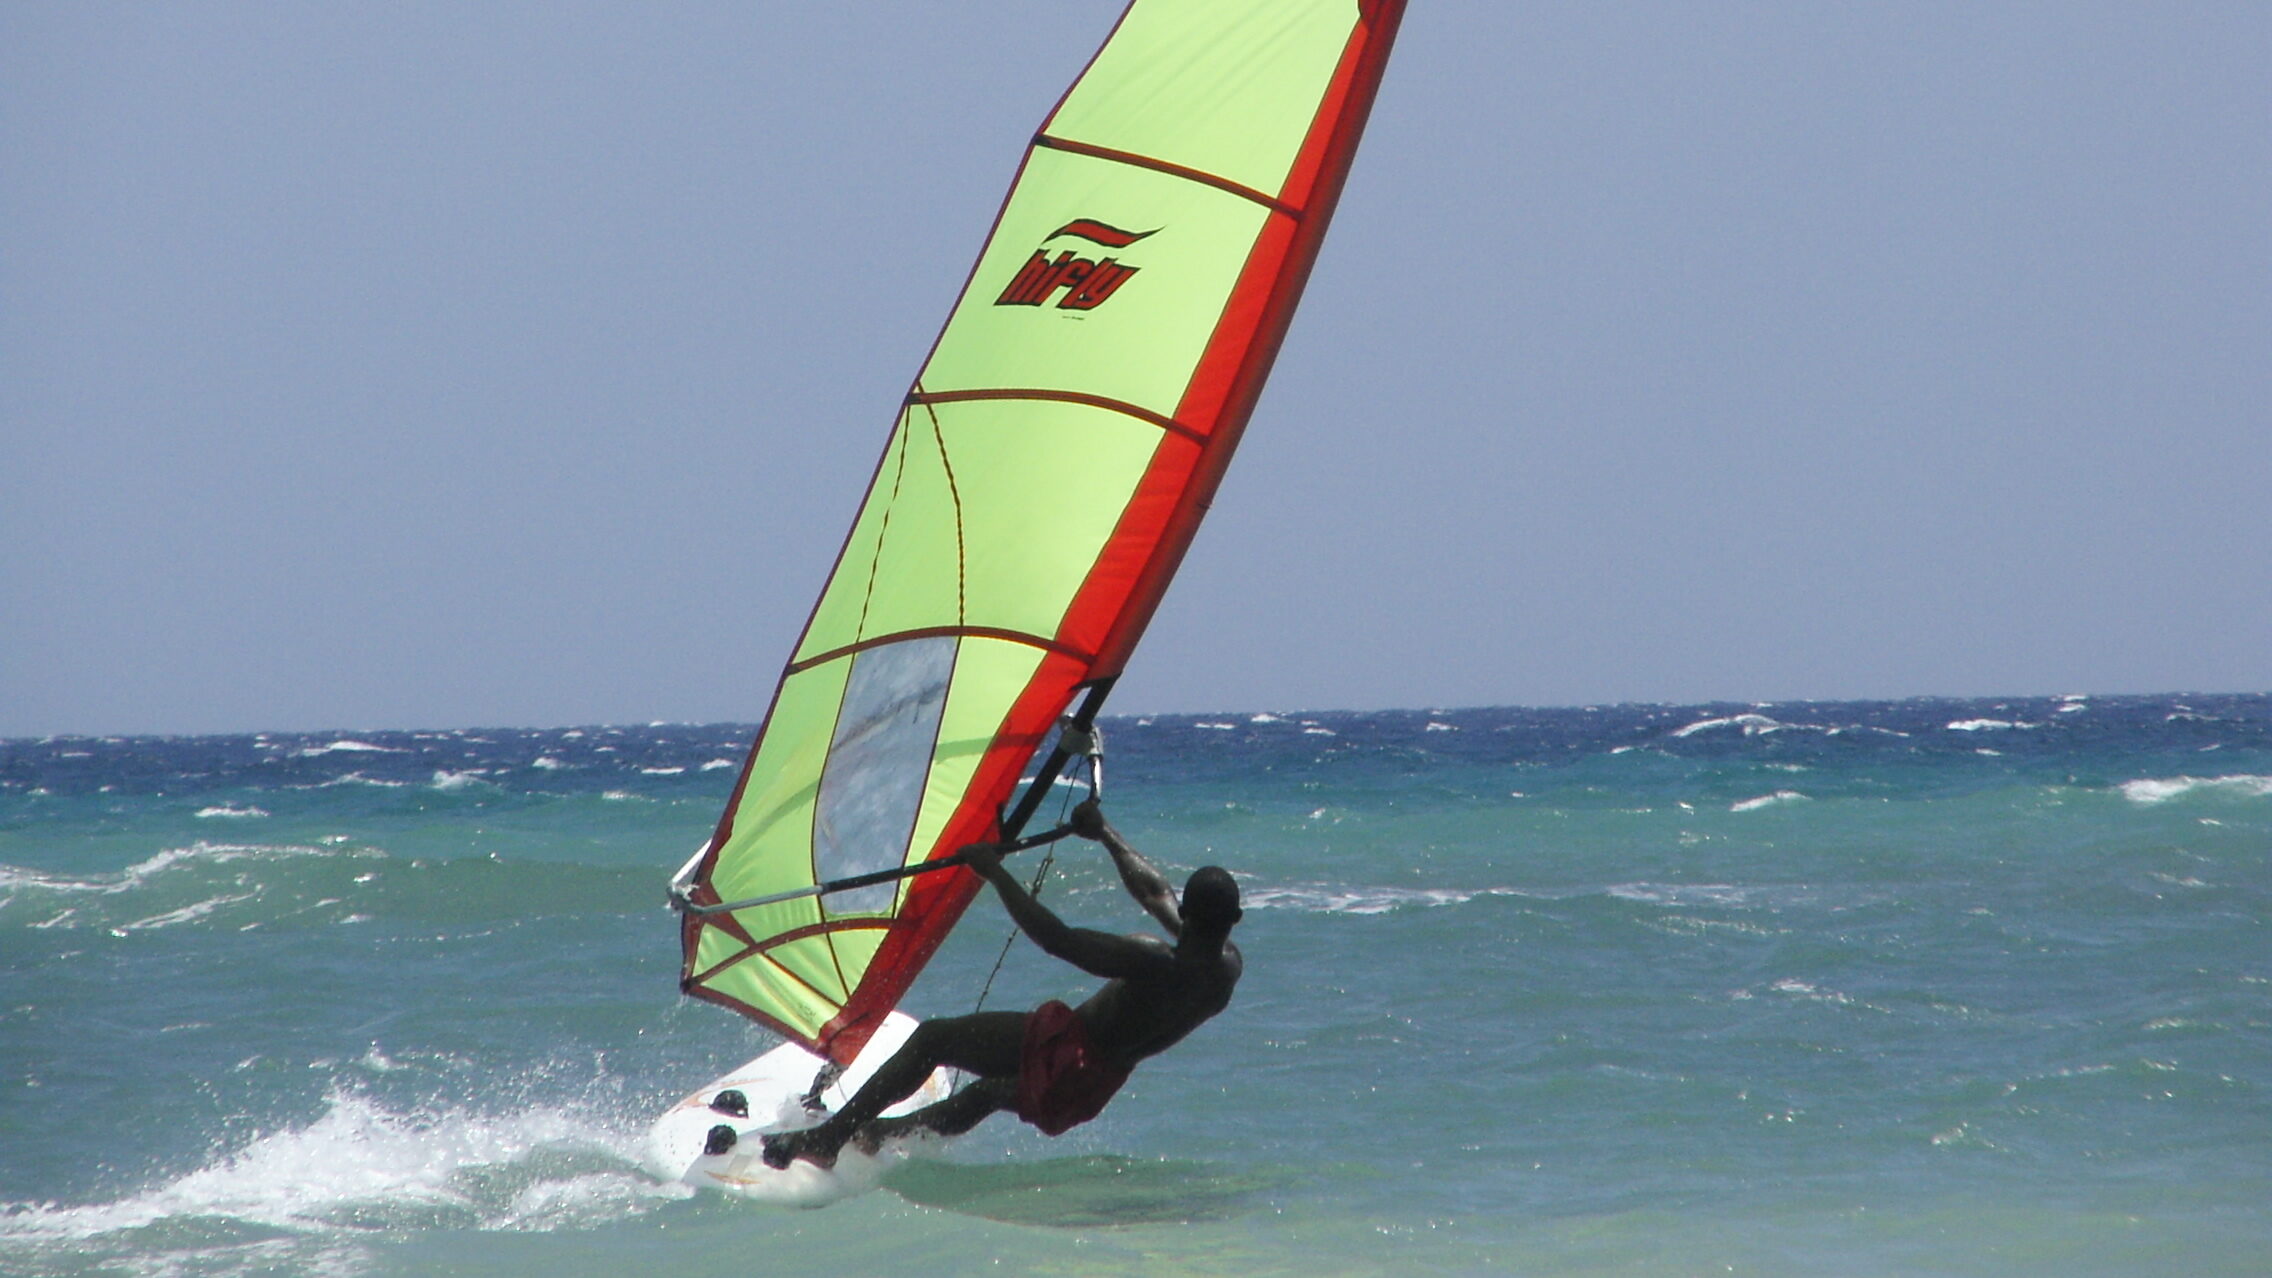 Hook-in Windsurfing harness